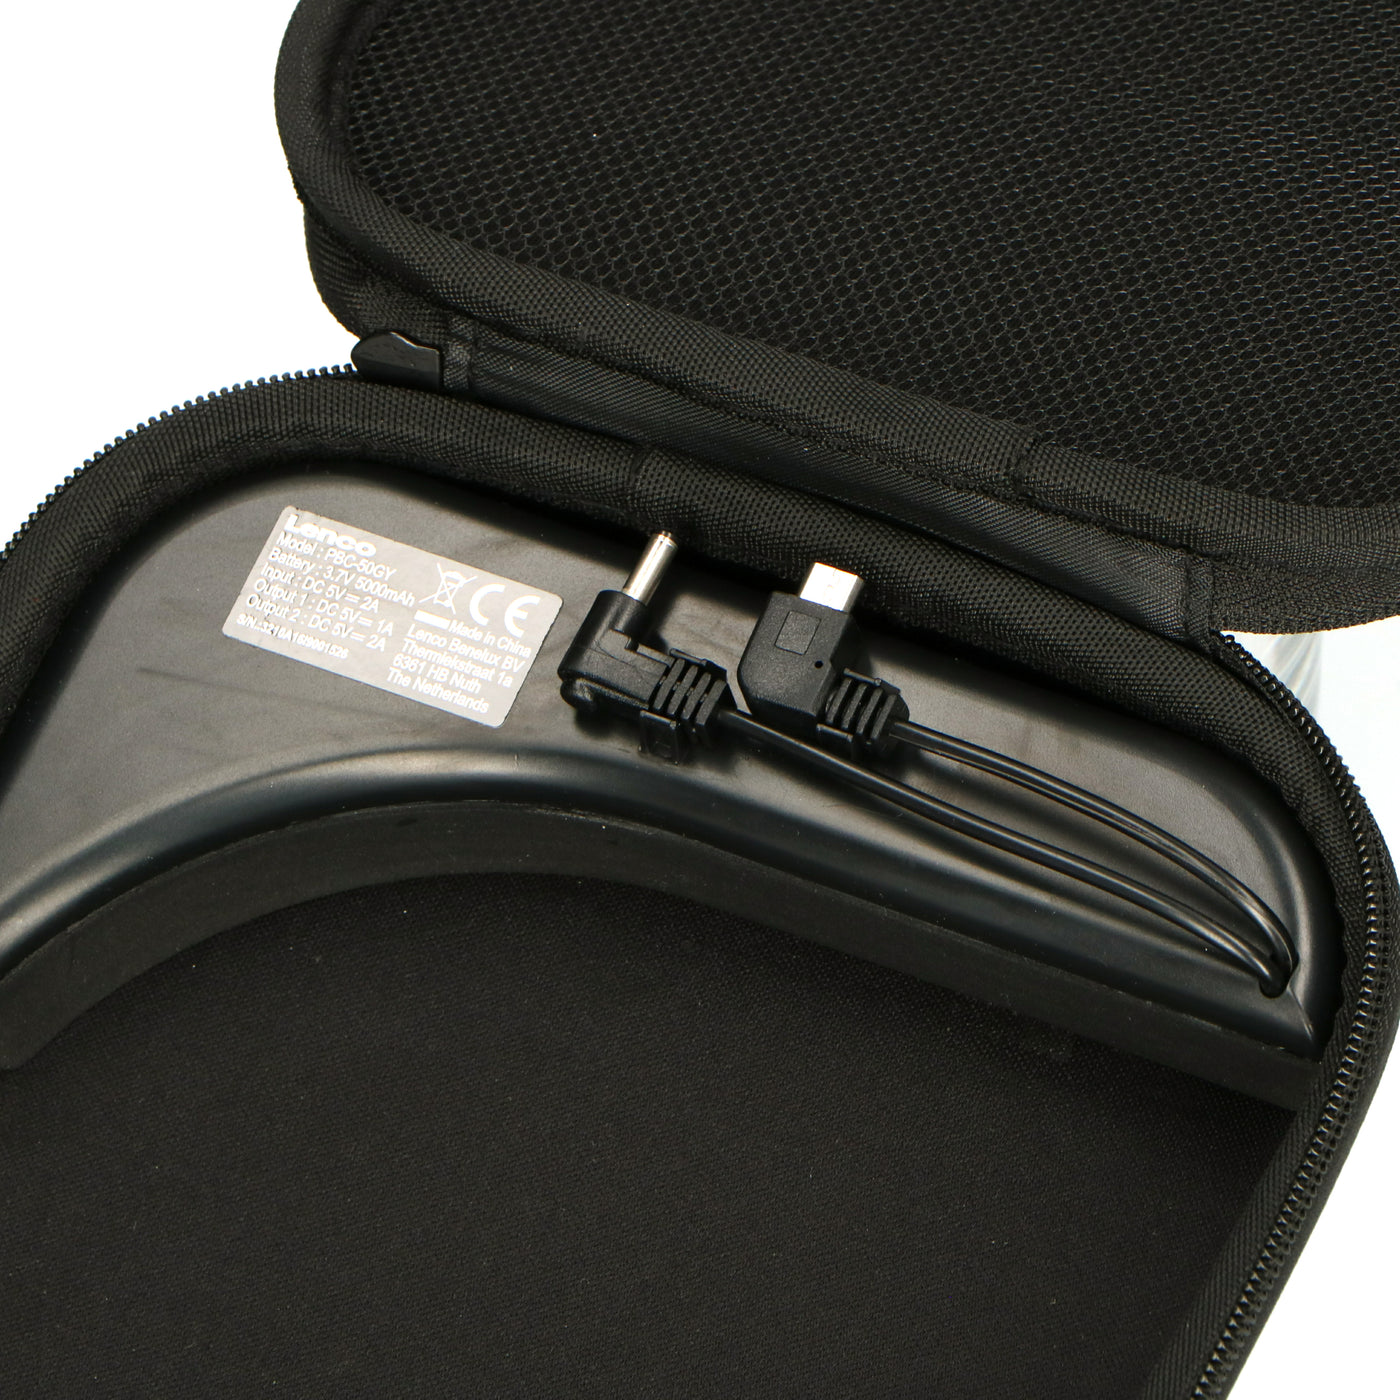 Lenco PBC-50GY - Étui avec chargeur portable intégré - Gris